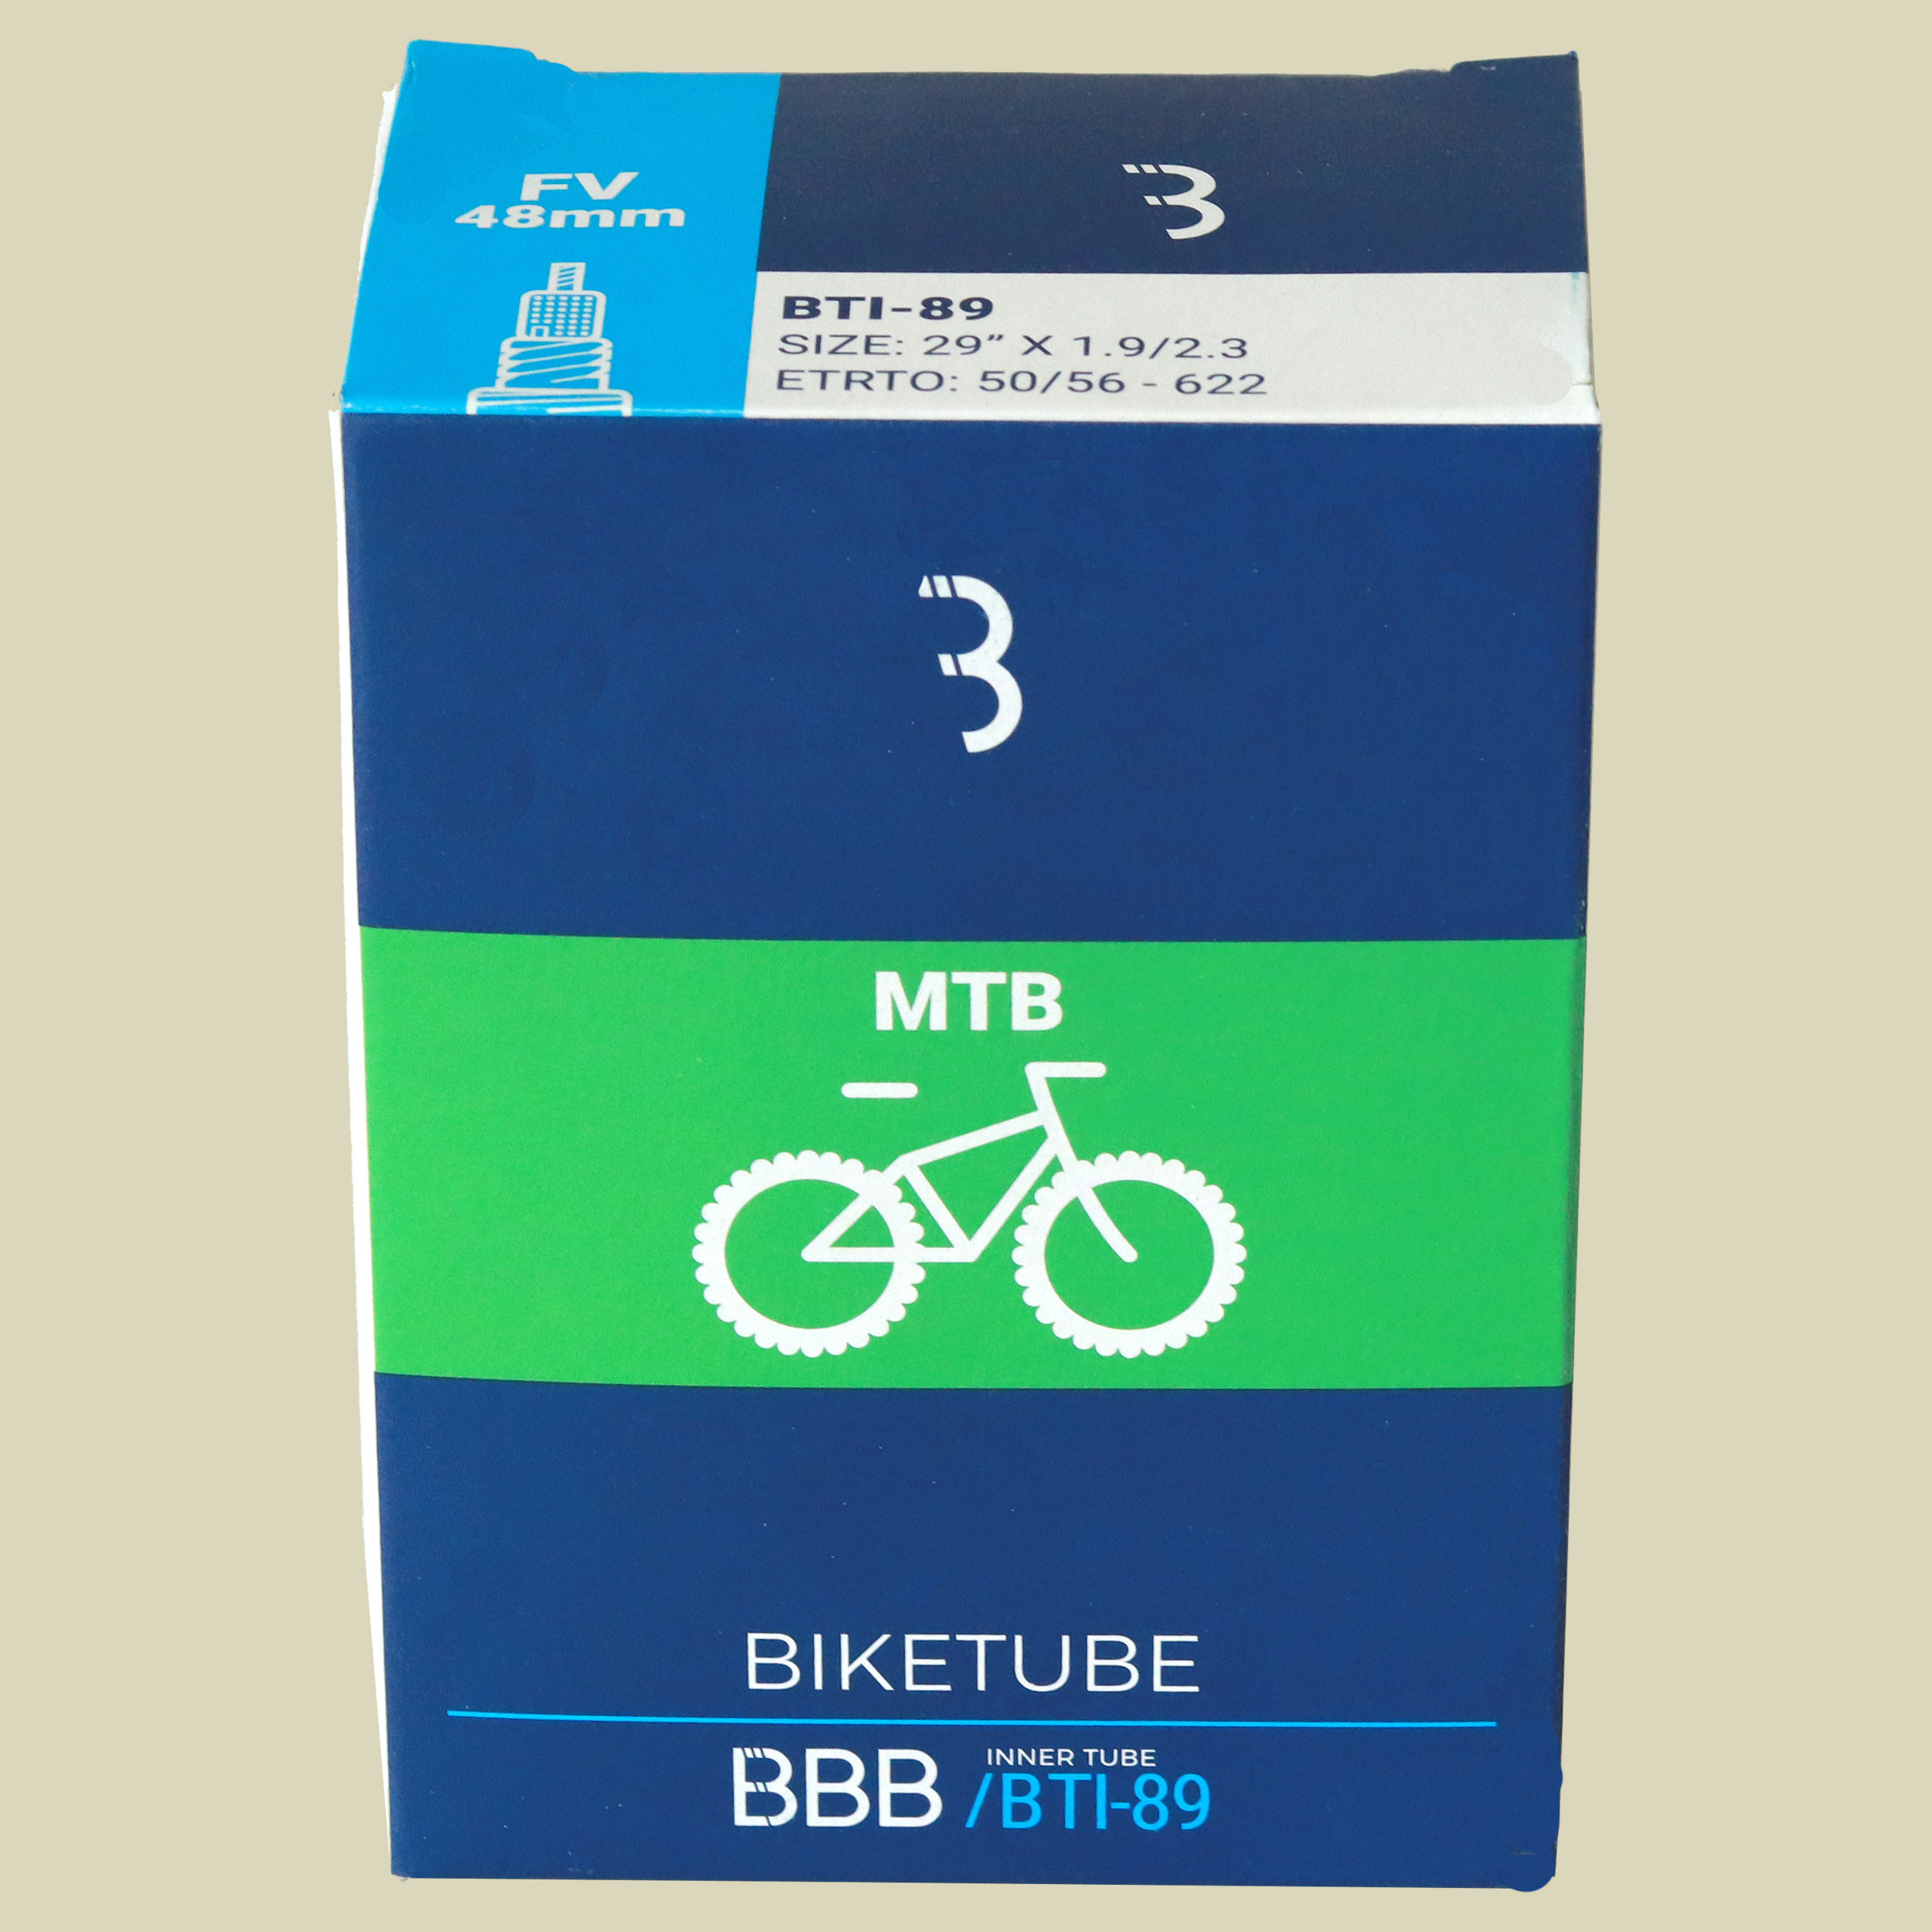 BTI-89 BikeTube 29 FV48 29'' x 1.9/2.3